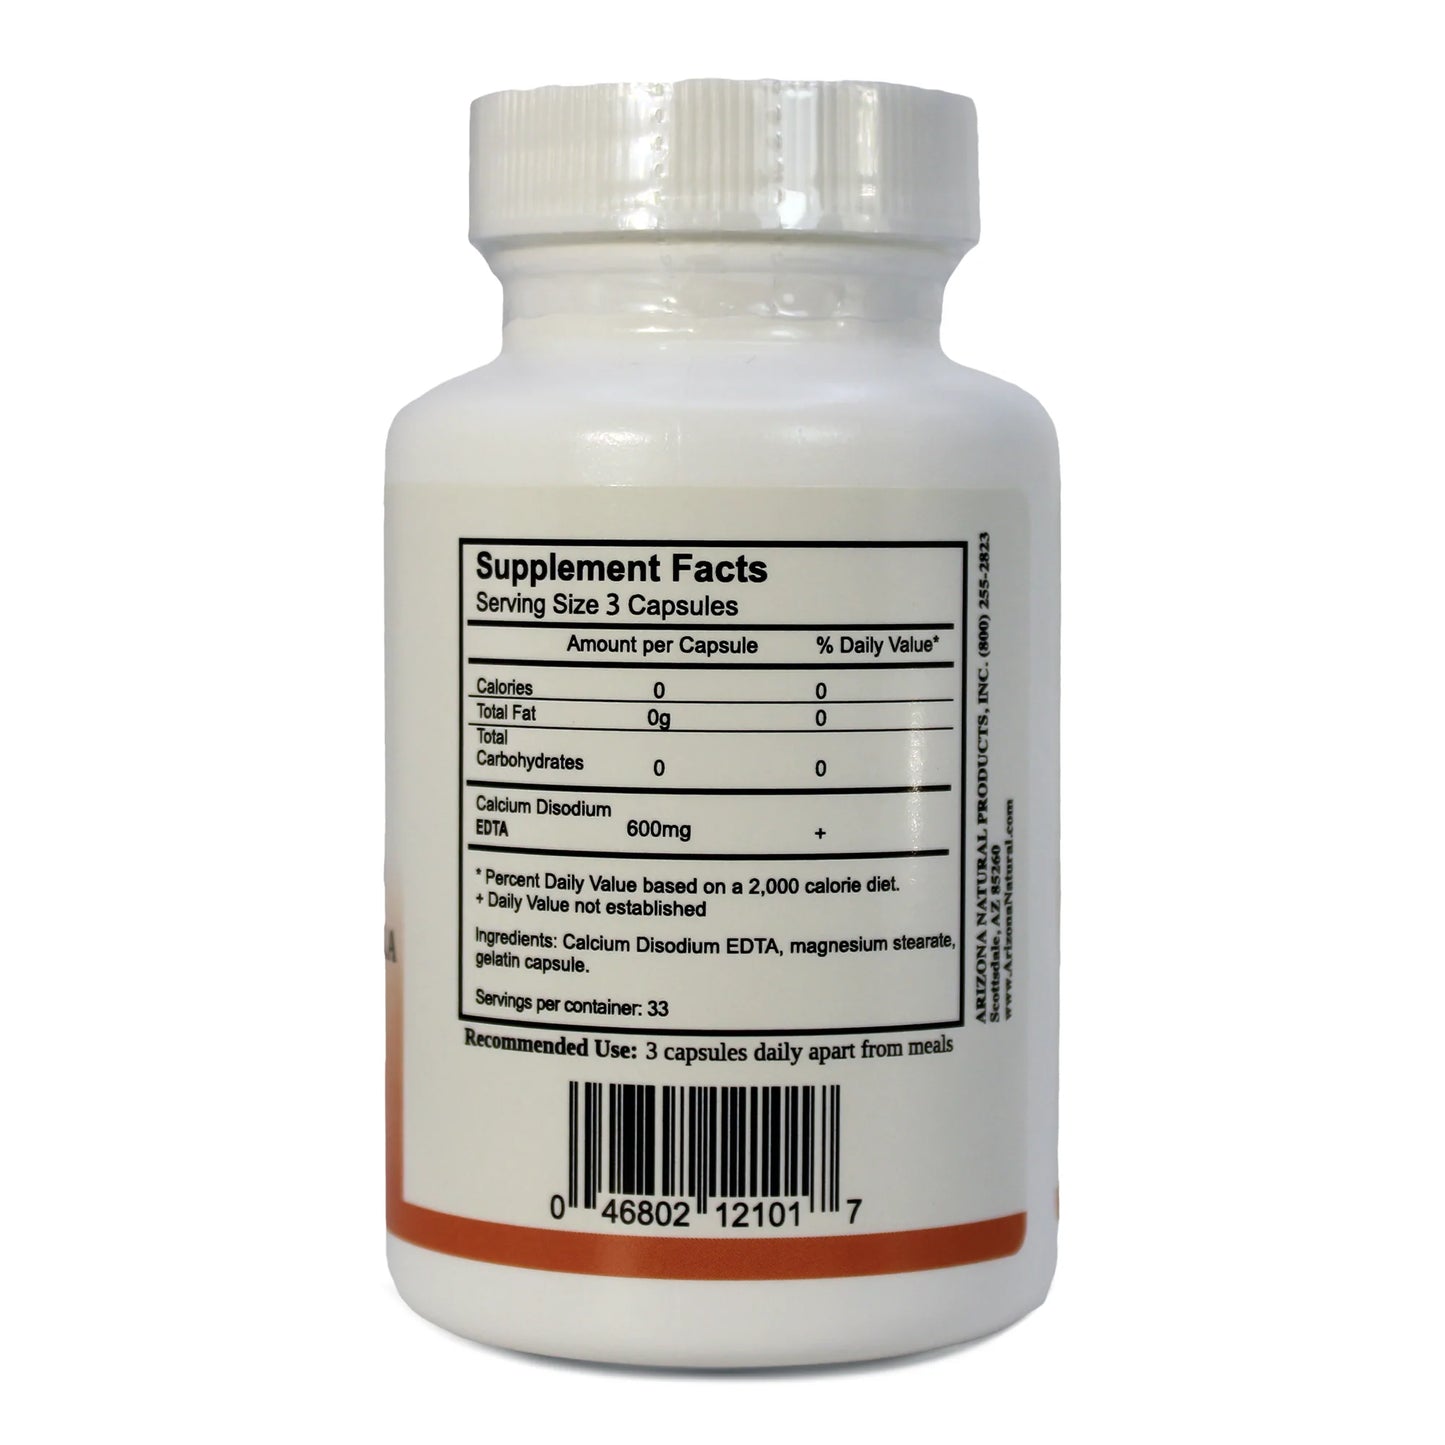 EDTA (Calcium disodium) 600mg - 100 capsules